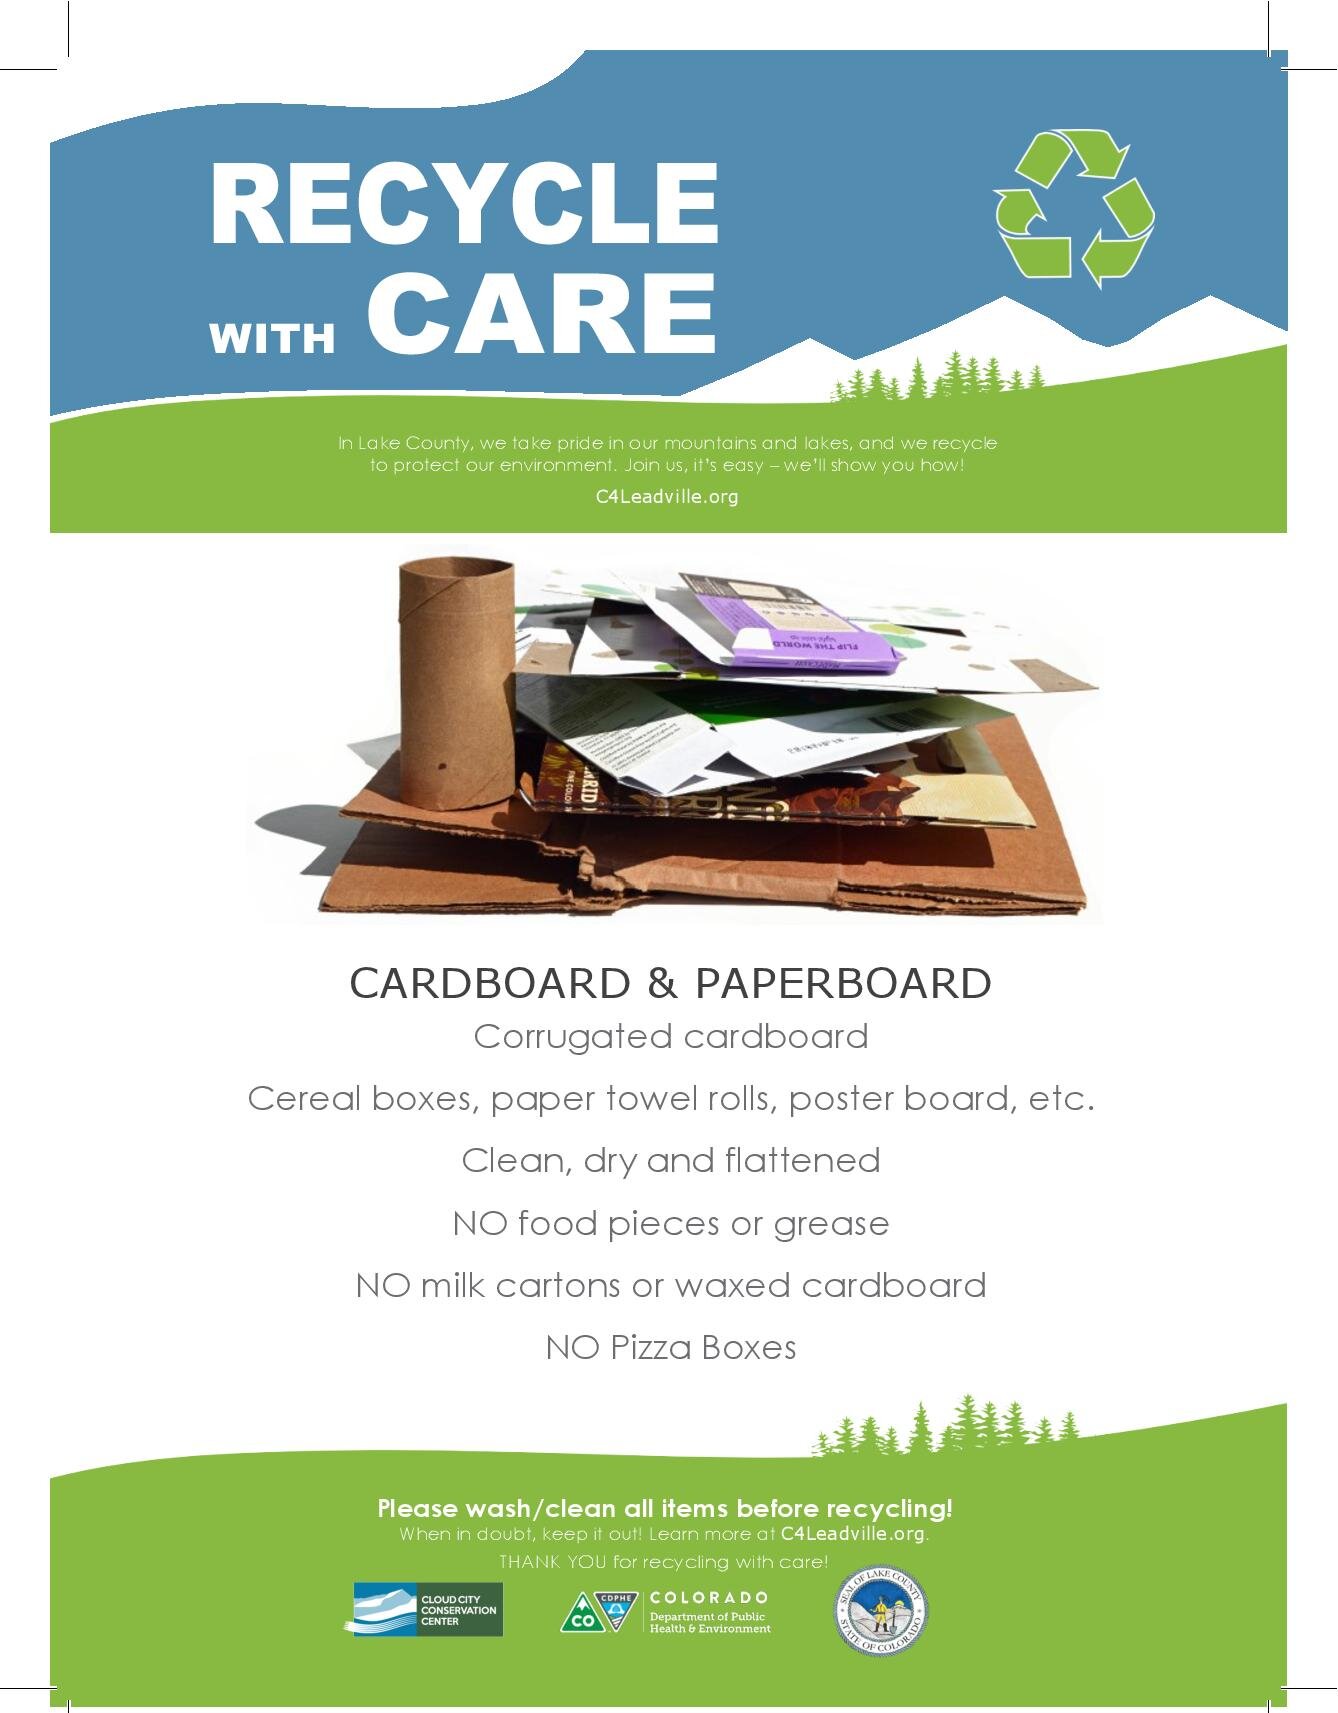 4. leadville-recycle-CARDBOARD-PAPERBOARD-page-001.jpg